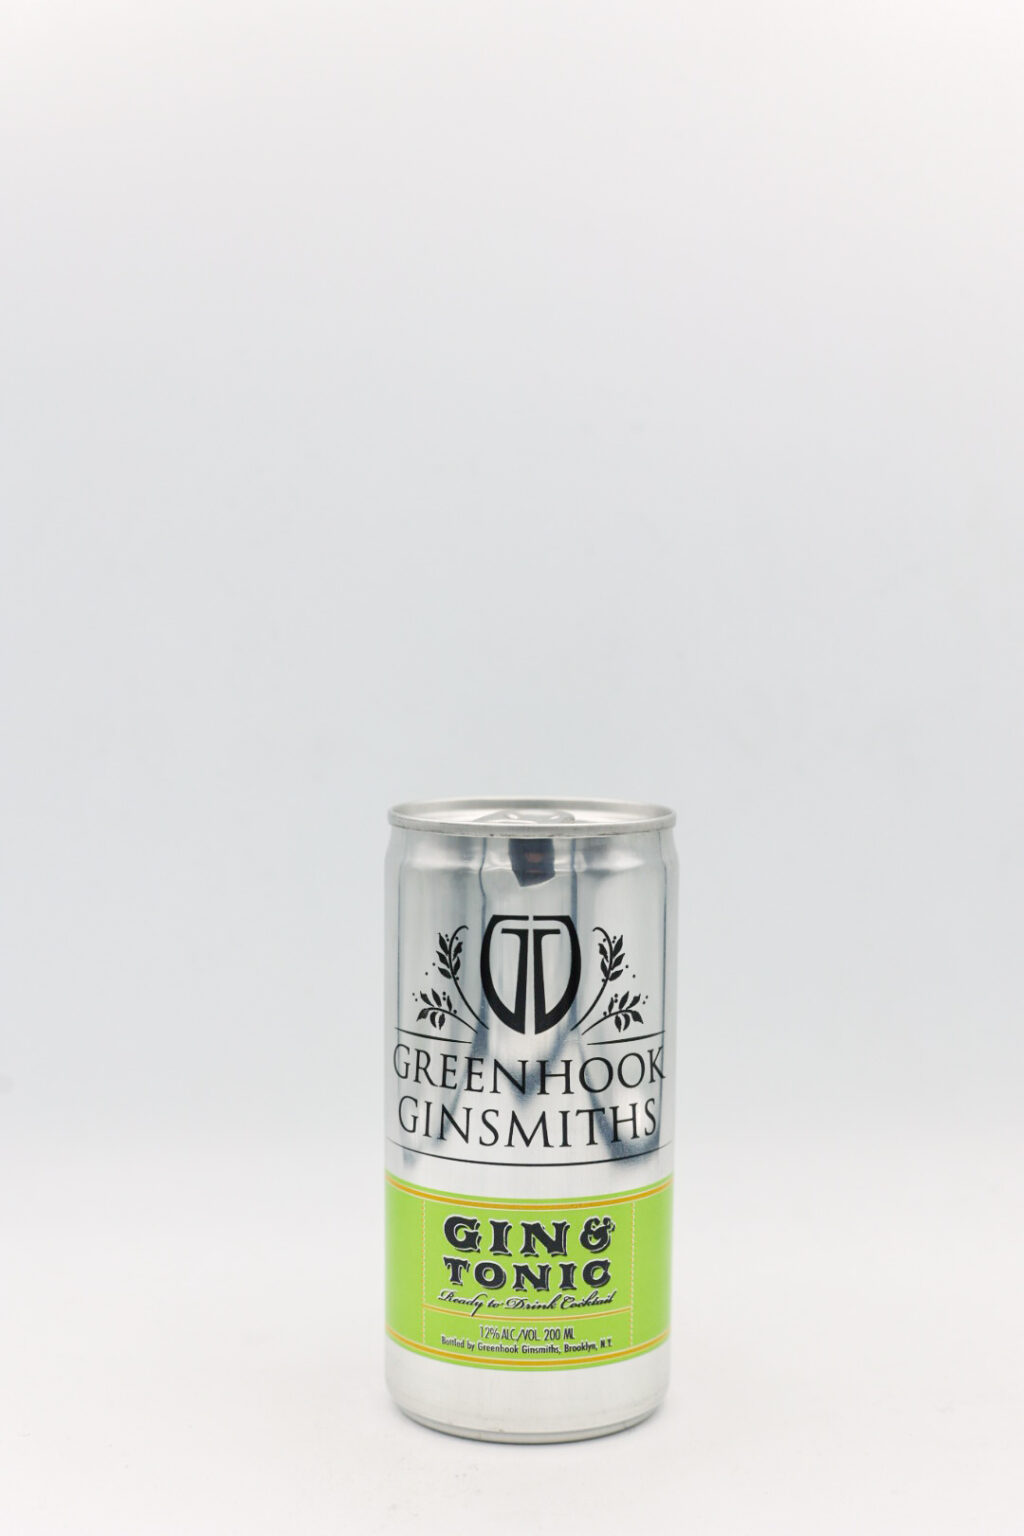 Greenhook Ginsmiths Gin & Tonic 200ml